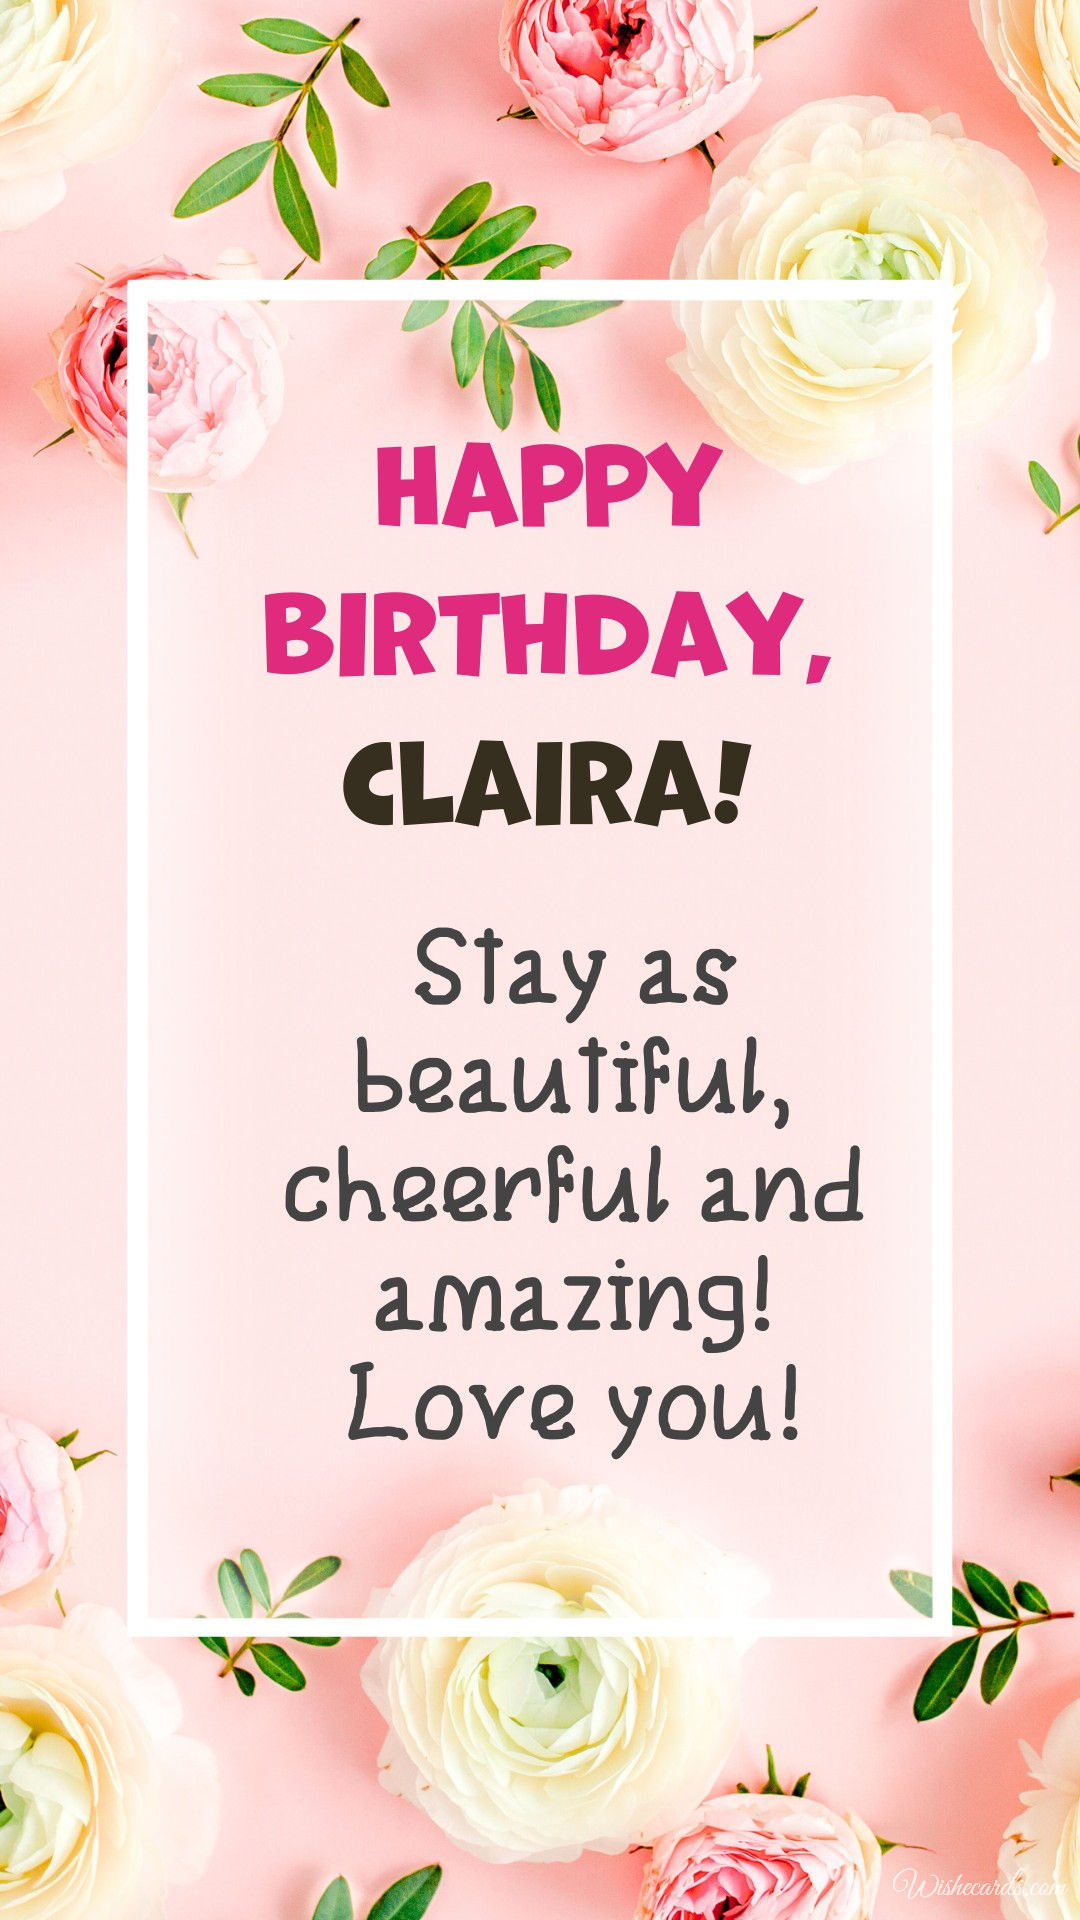 Happy Birthday to Clara